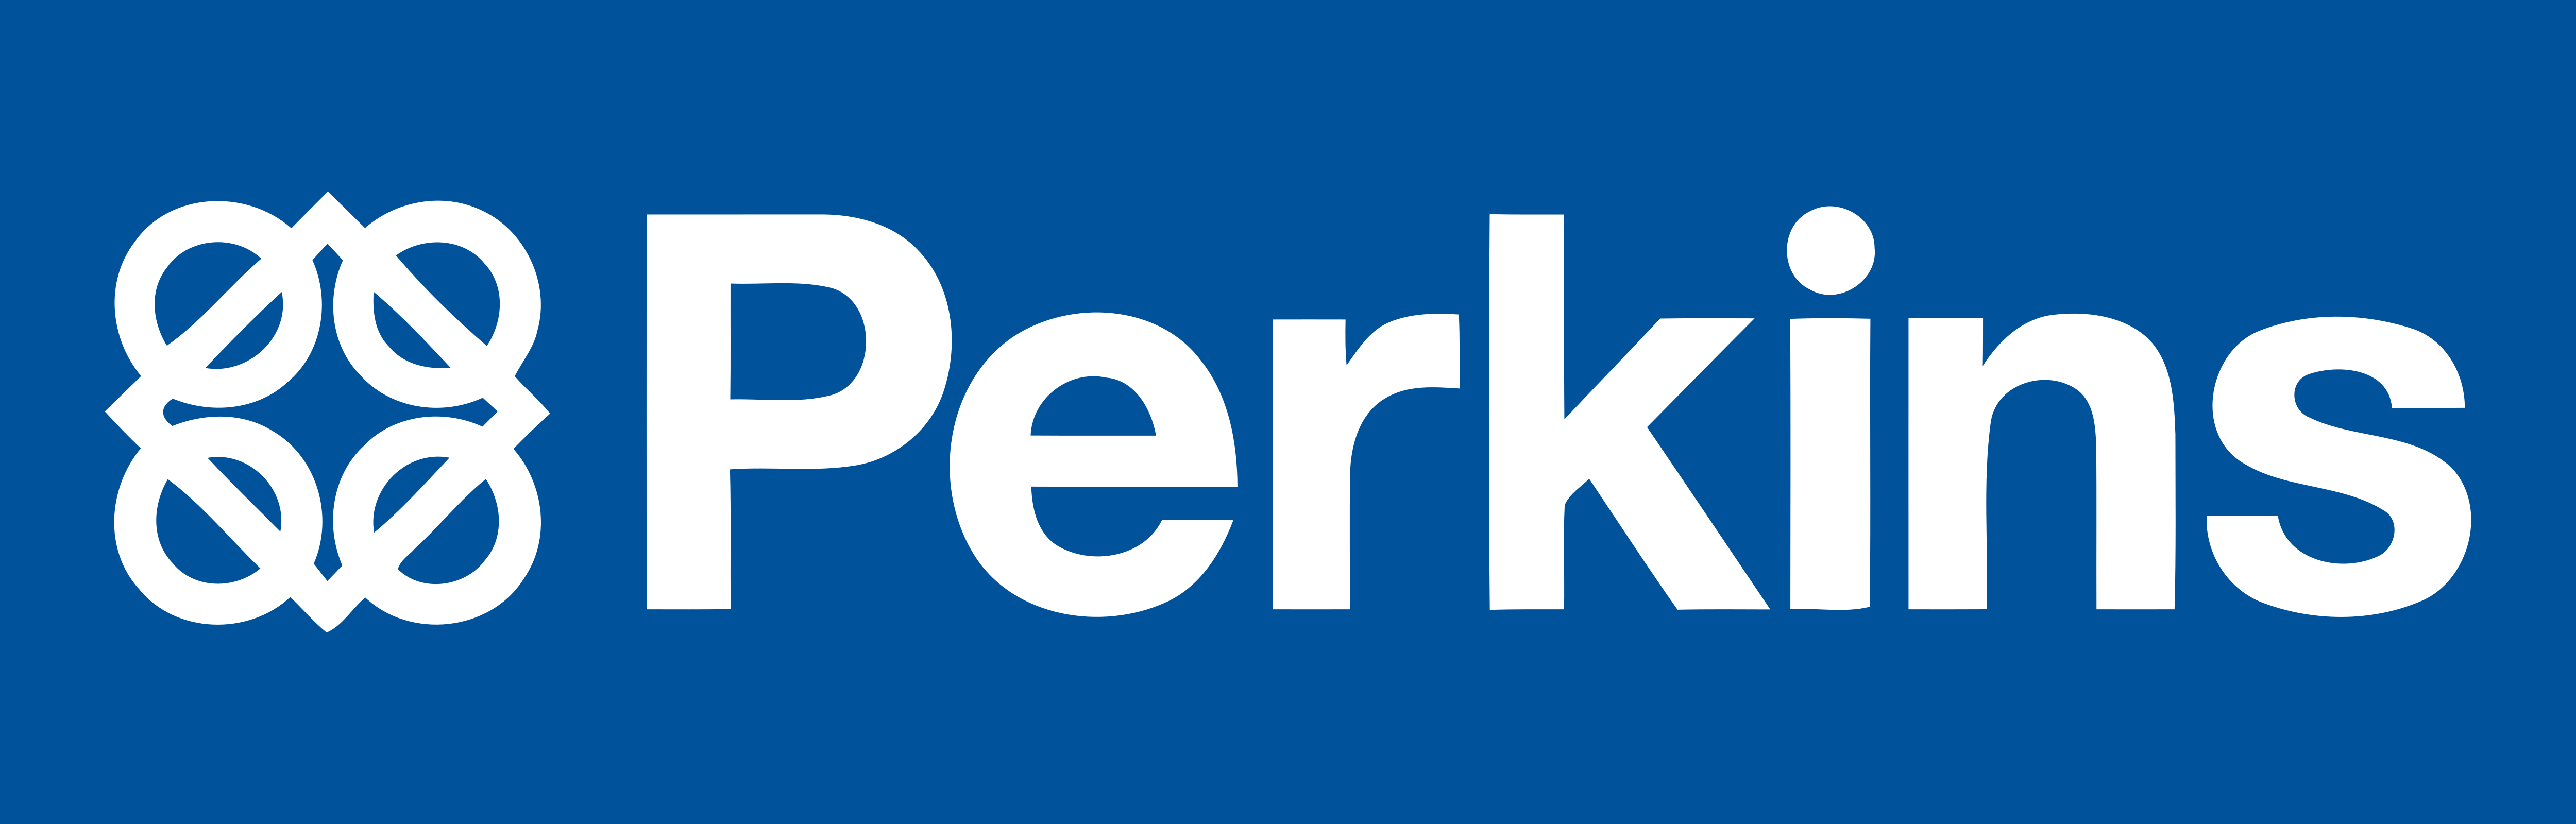 Perkins - Logos Download.